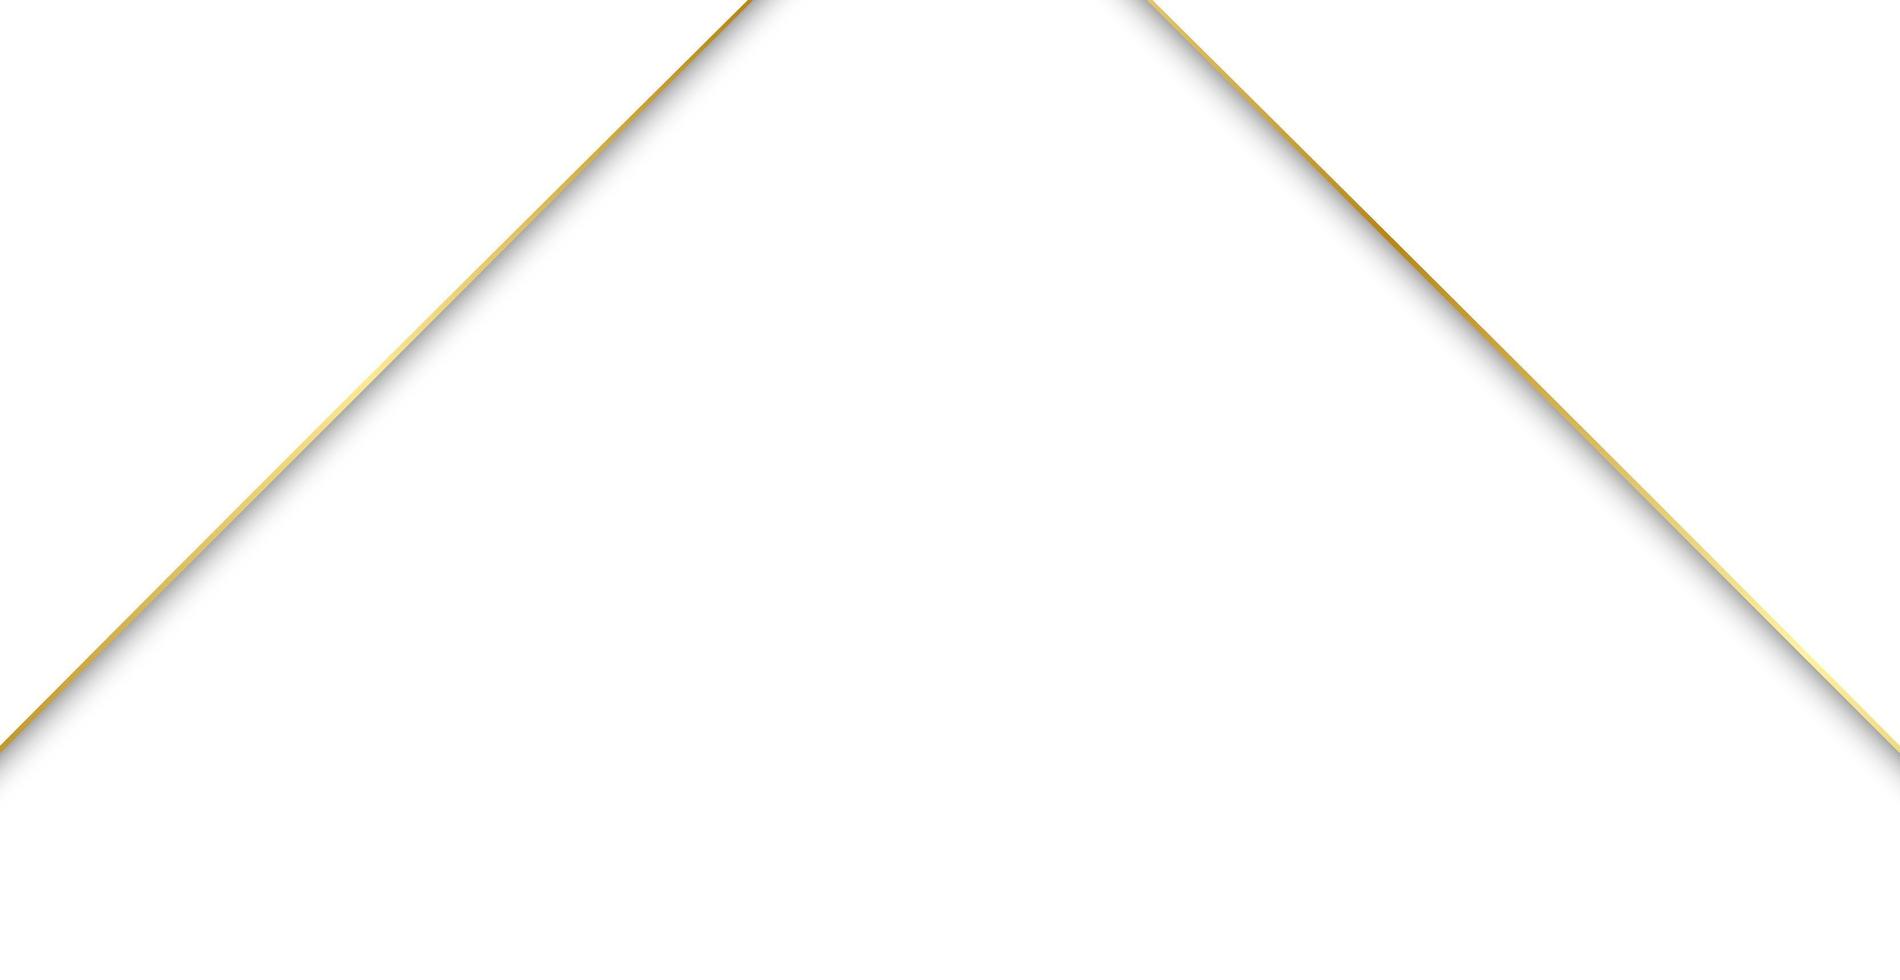 abstrait fond blanc avec des lignes dorées - vecteur